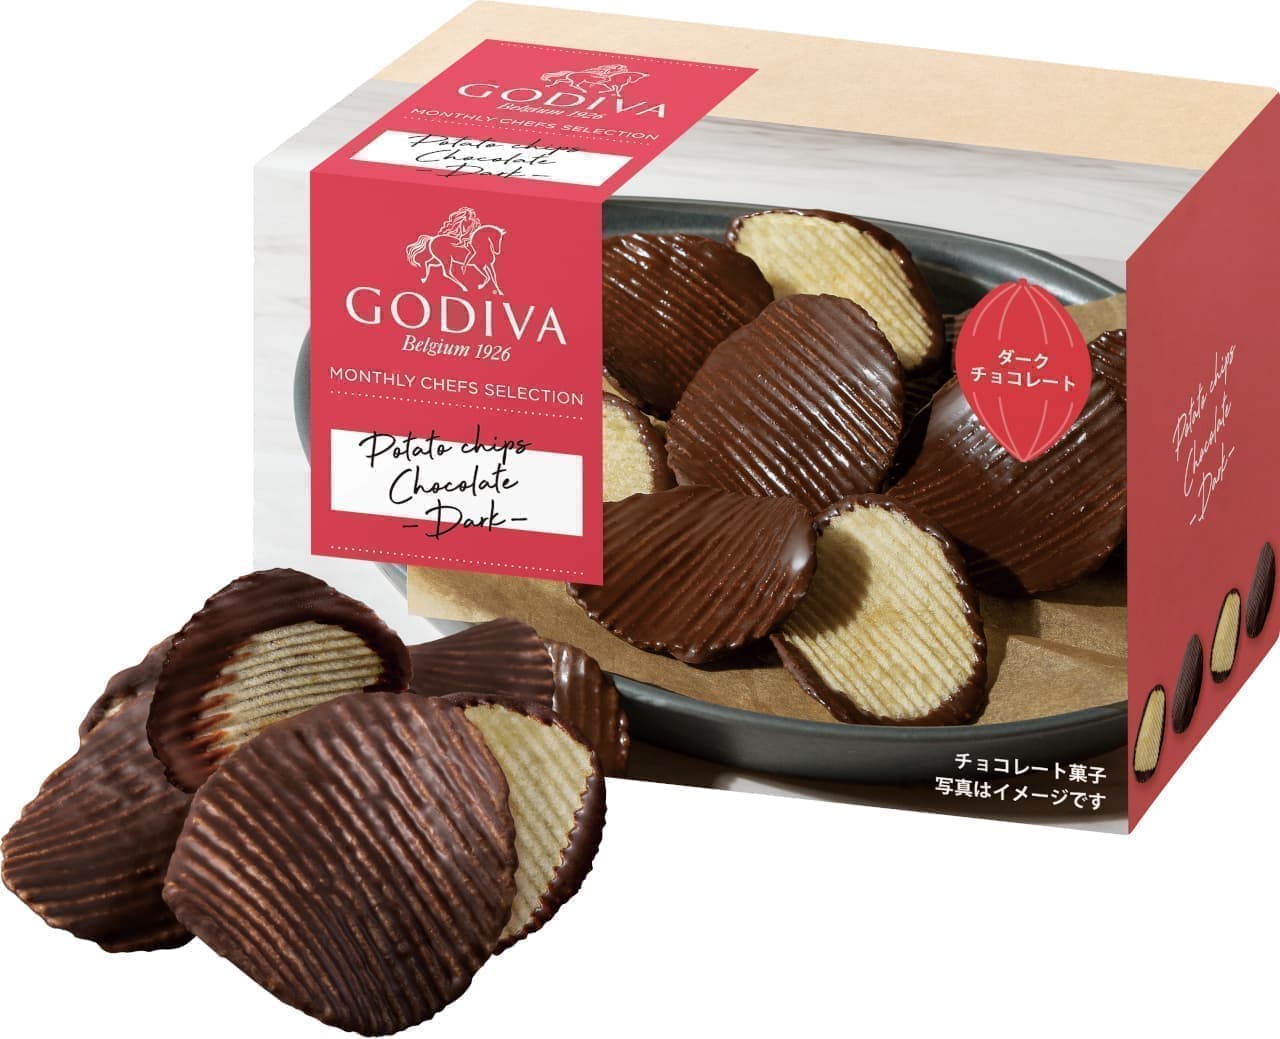 Godiva "Potato Chips Chocolate Dark" package